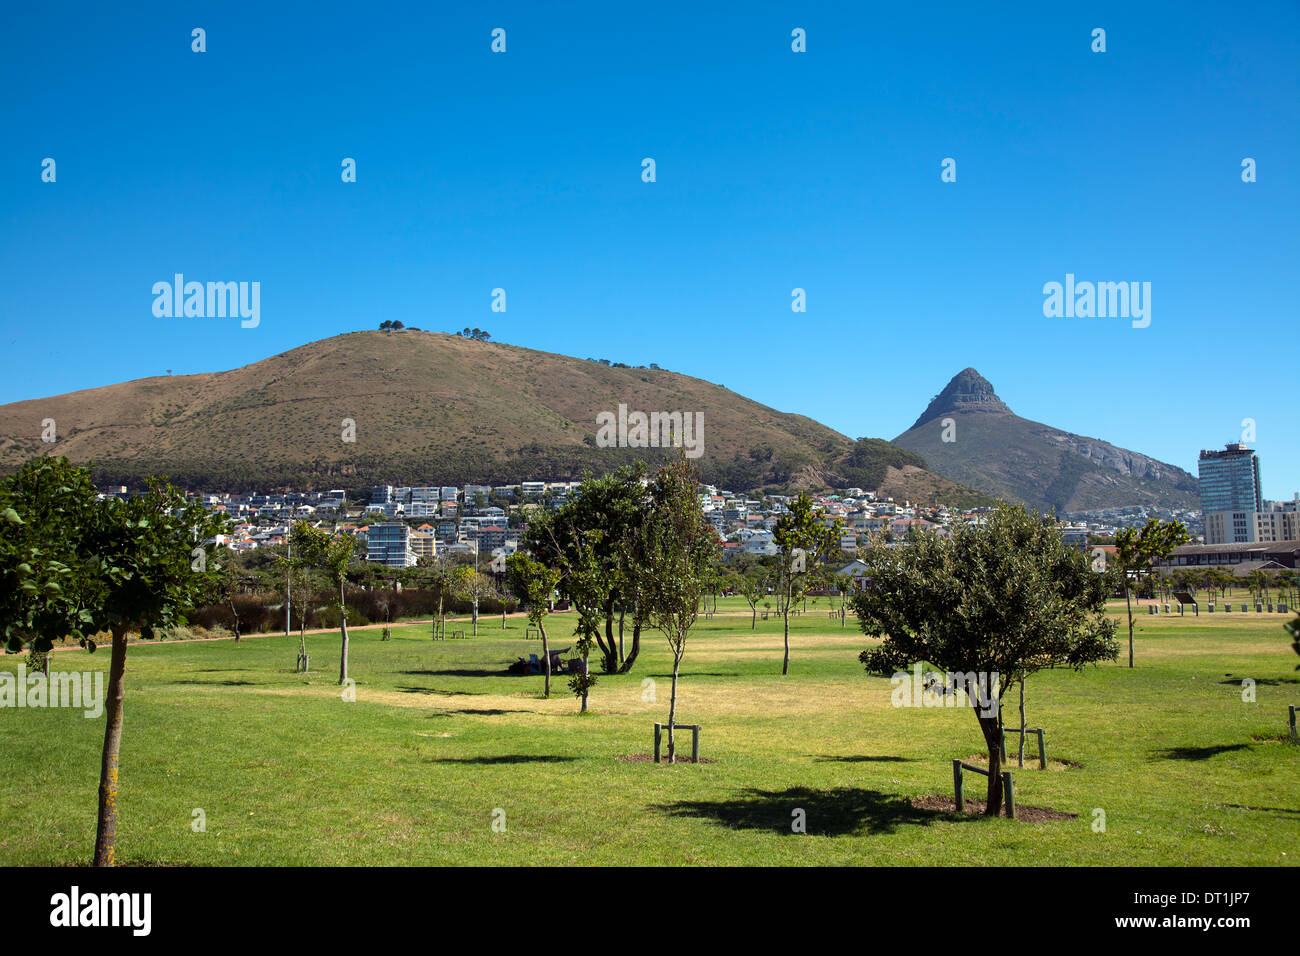 Parc de Green Point à Cape Town - Afrique du Sud Banque D'Images